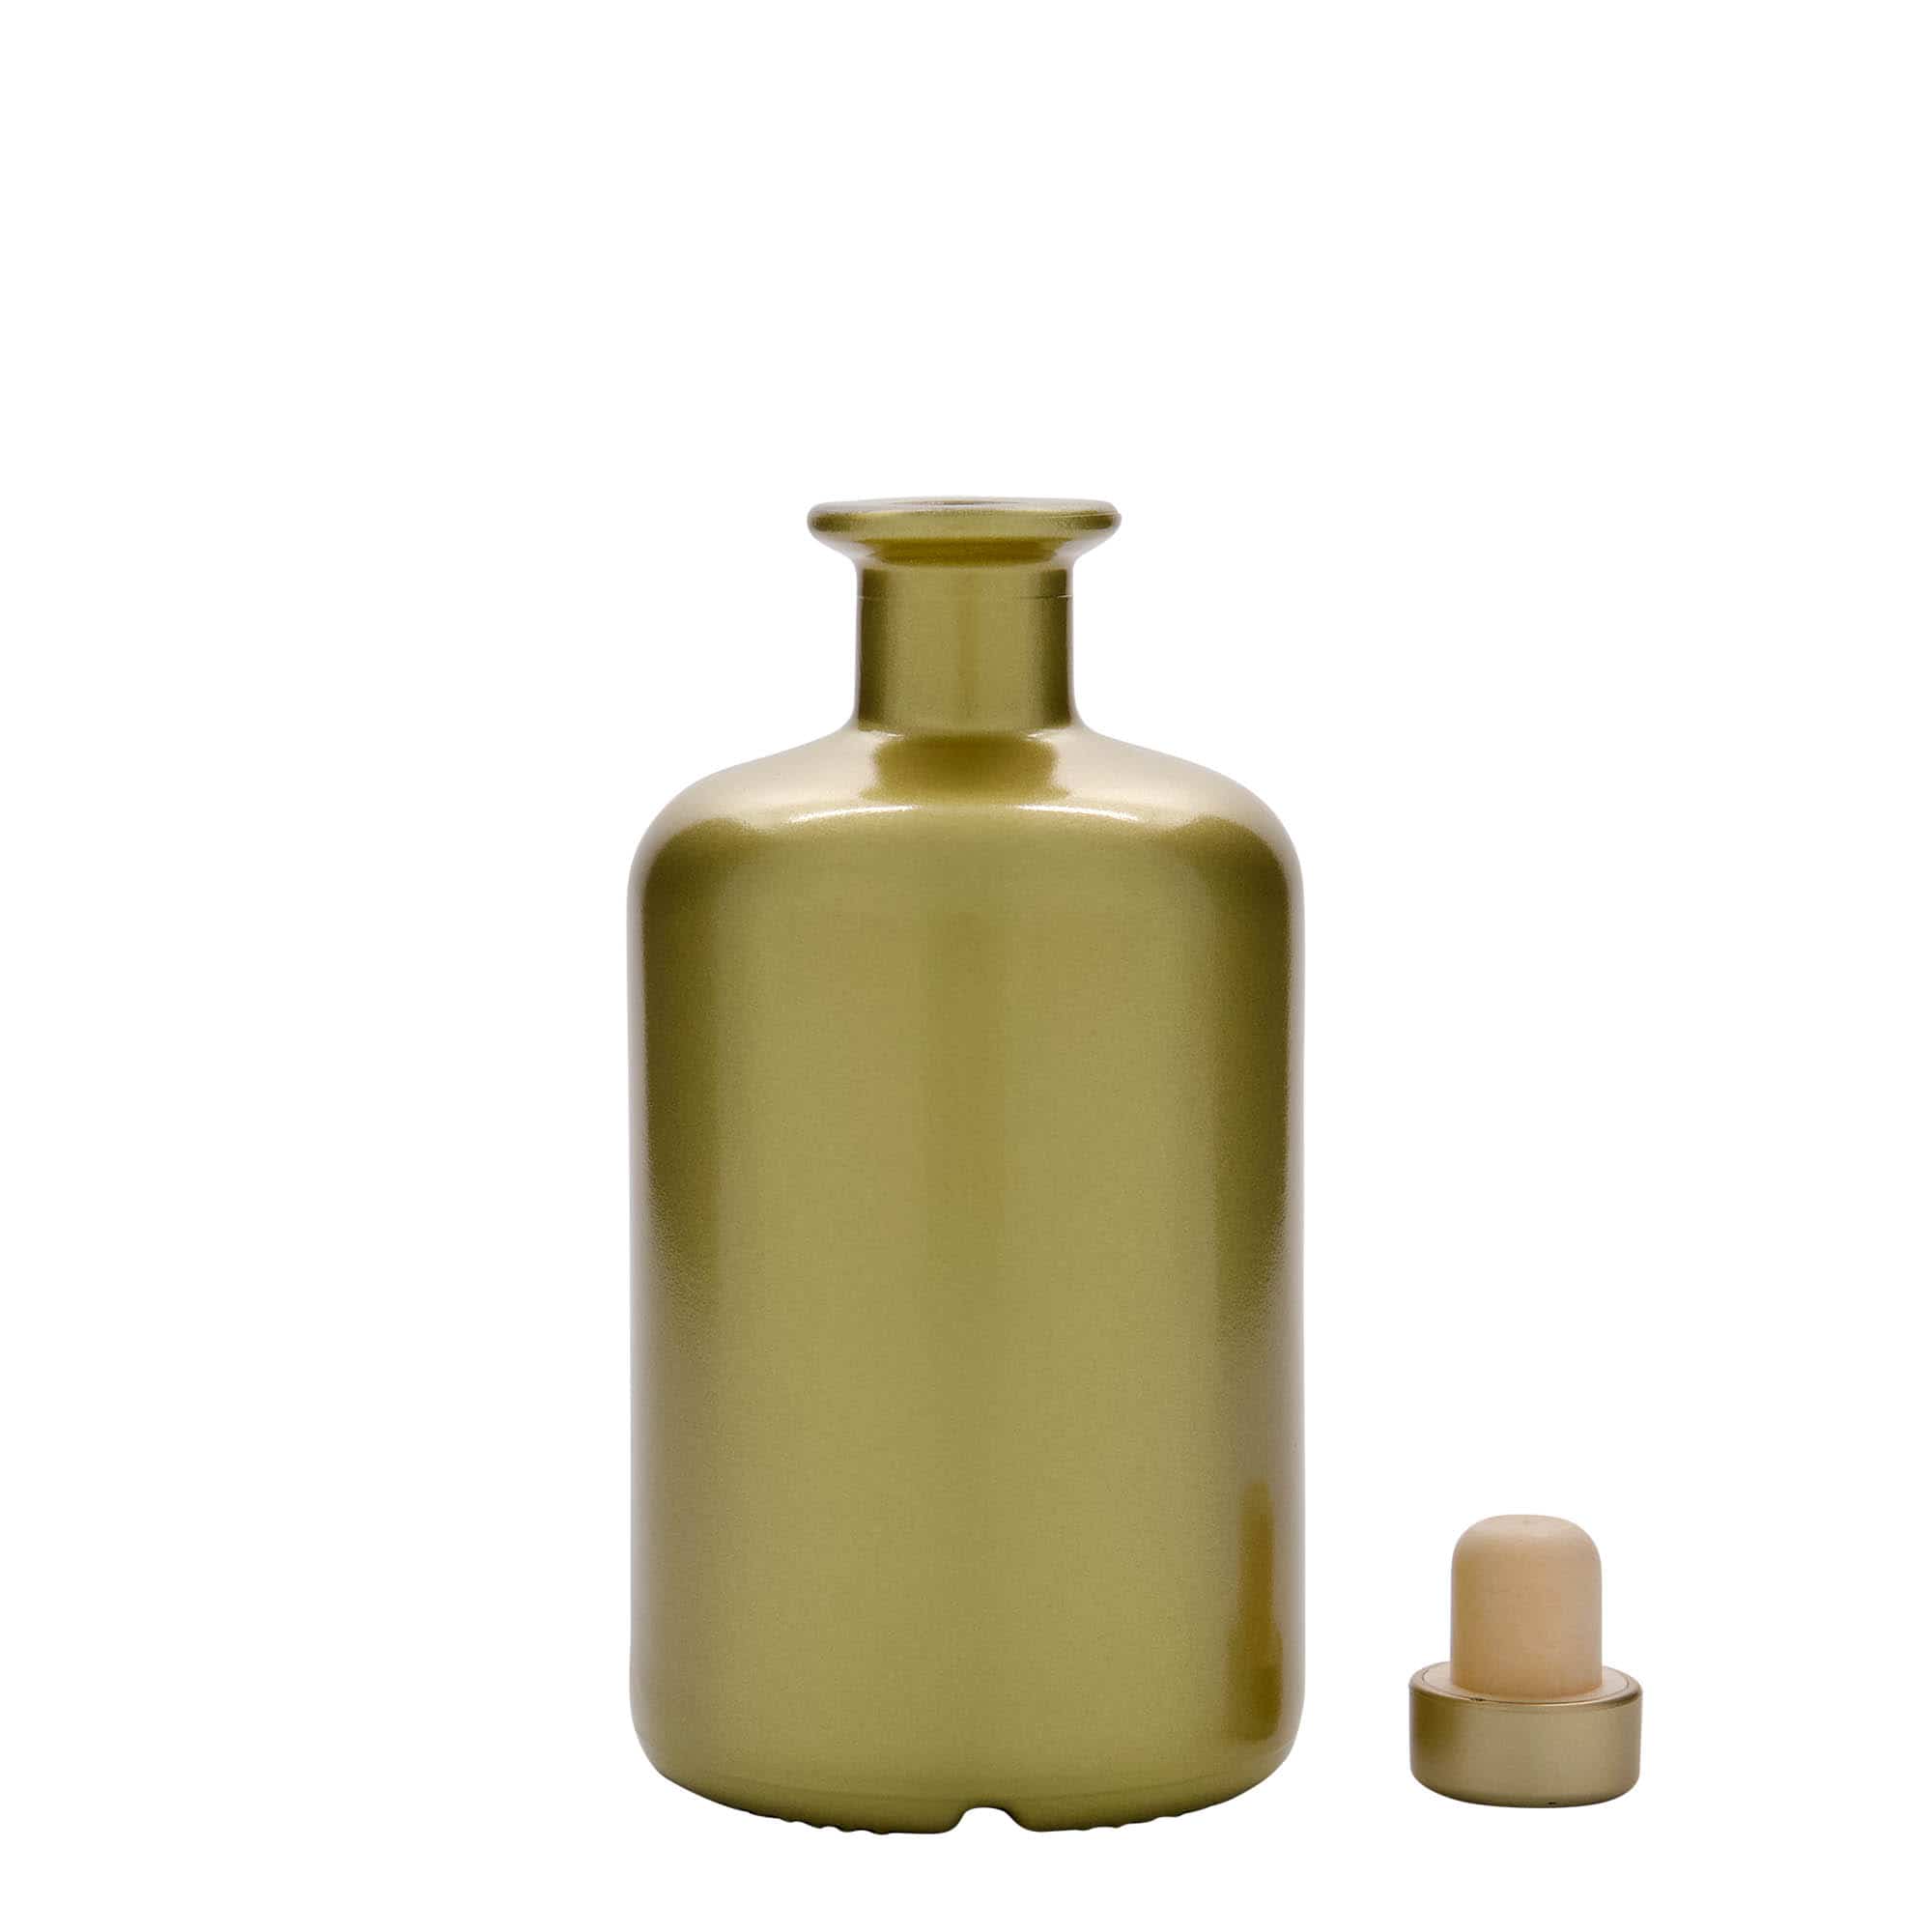 500 ml butelka szklana apteczna, kolor złoty, zamknięcie: korek